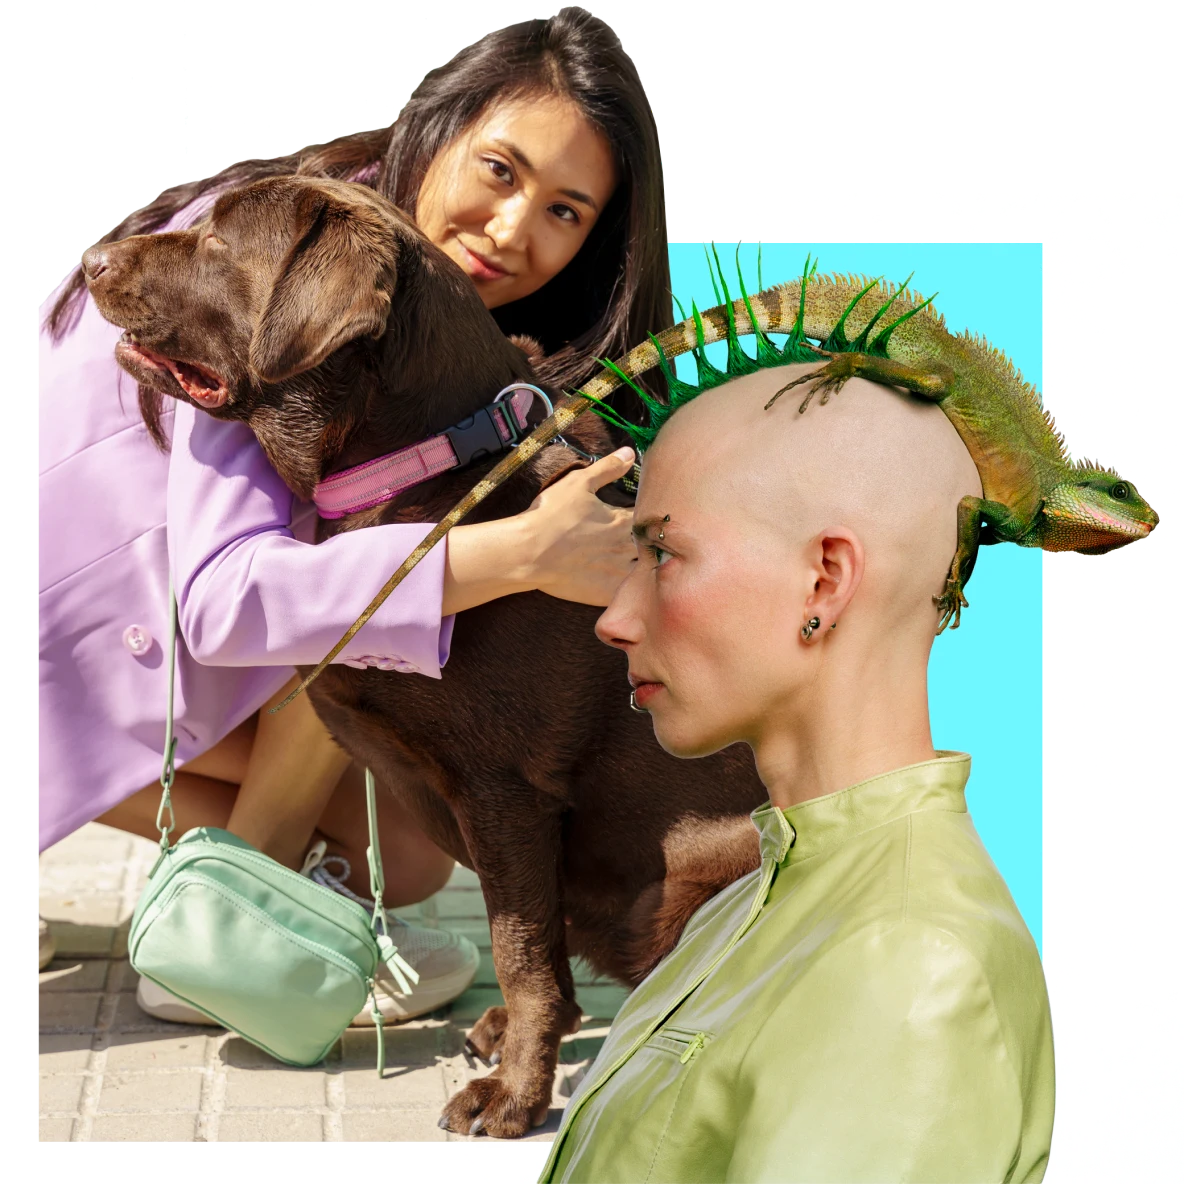 À gauche, femme asiatique qui fait un câlin à un chien marron. À droite, une femme blanche aux cheveux hérissés et un iguane sur la tête.
